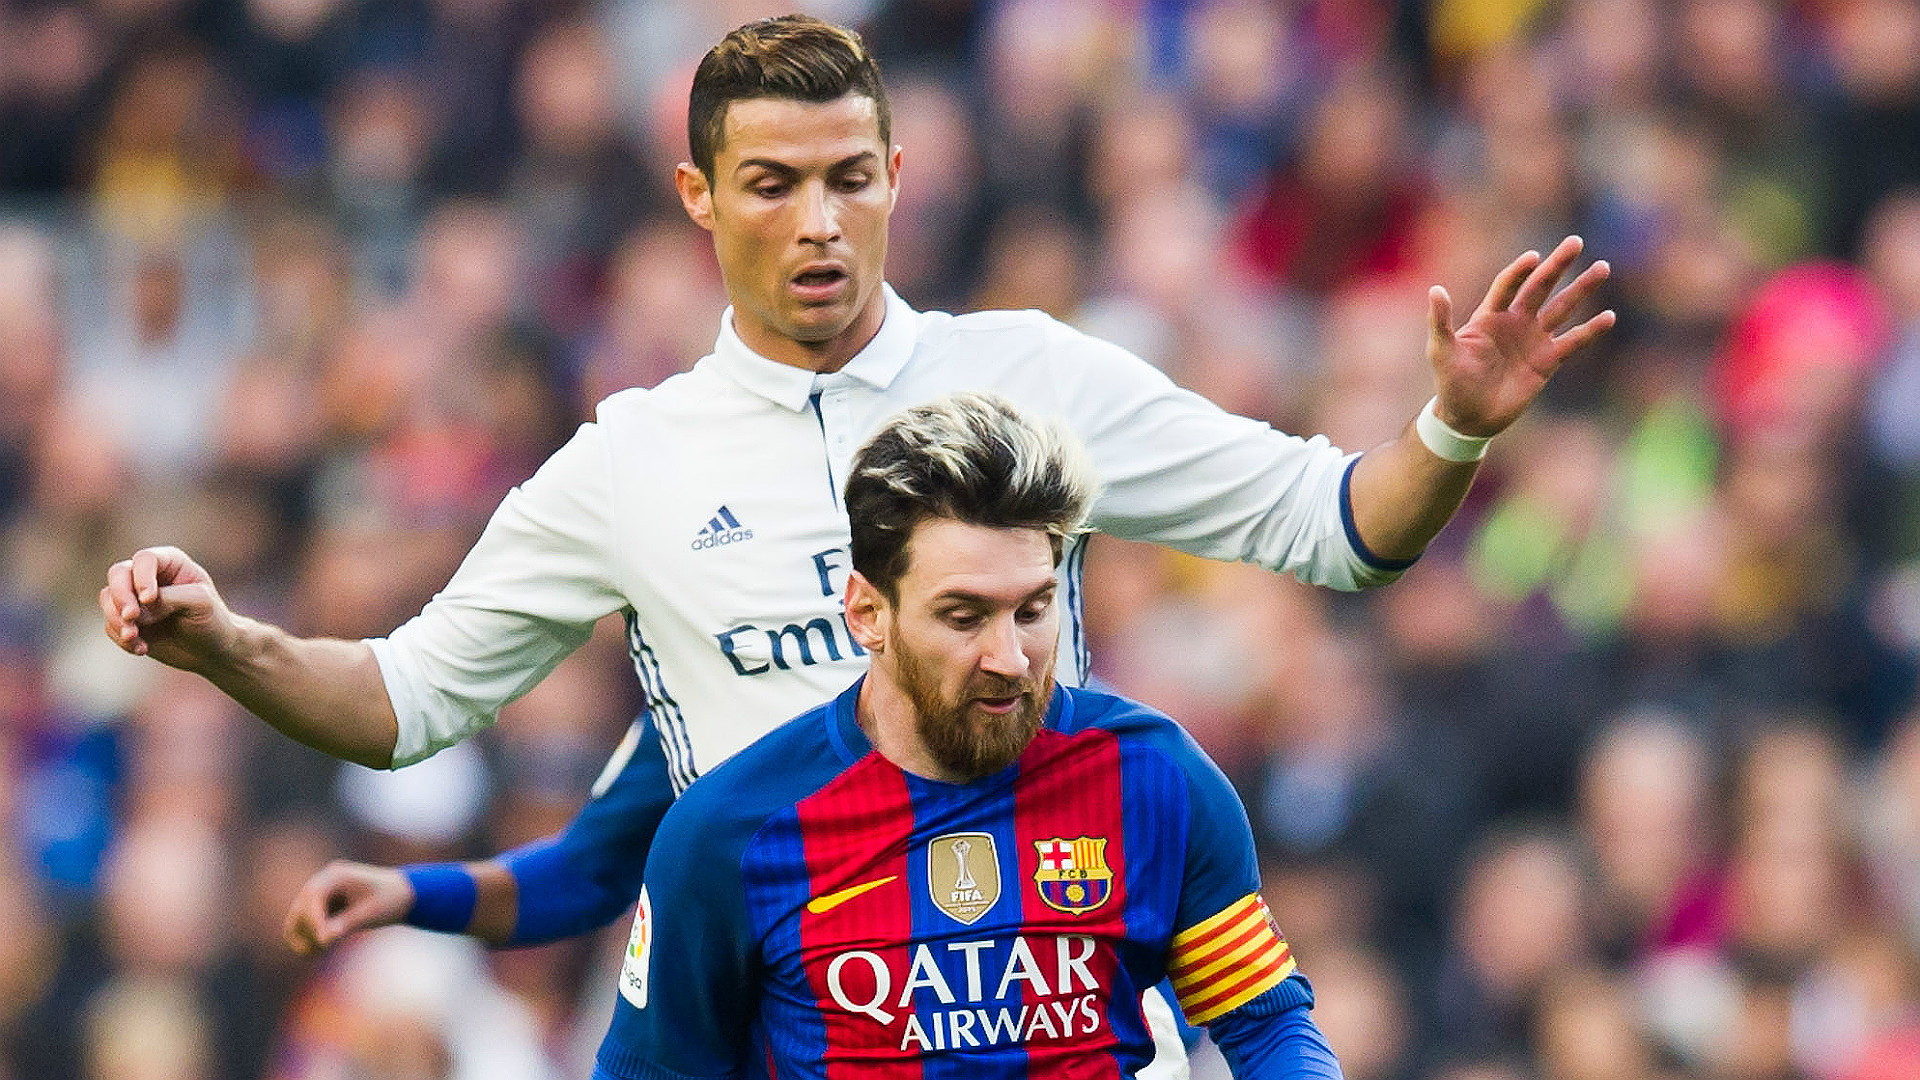 Lionel Messi e Cristiano Ronaldo fuori dalla Champions League, è davvero  finita un'era? - Eurosport